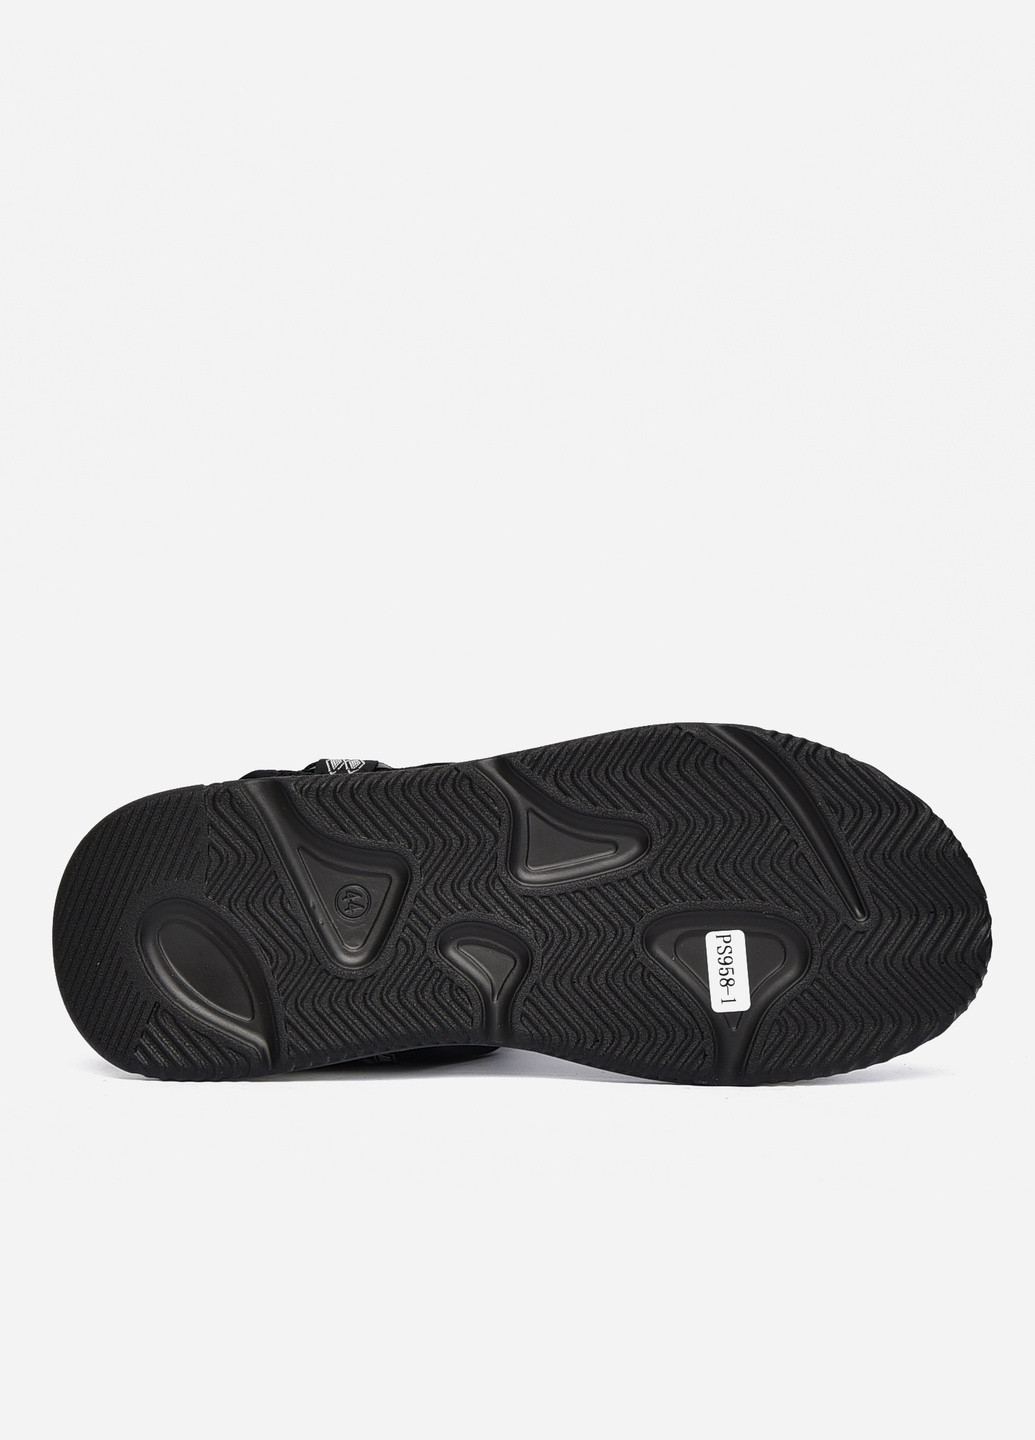 Пляжные сандалии мужские чорного цвета с серыми вставками текстиль Let's Shop